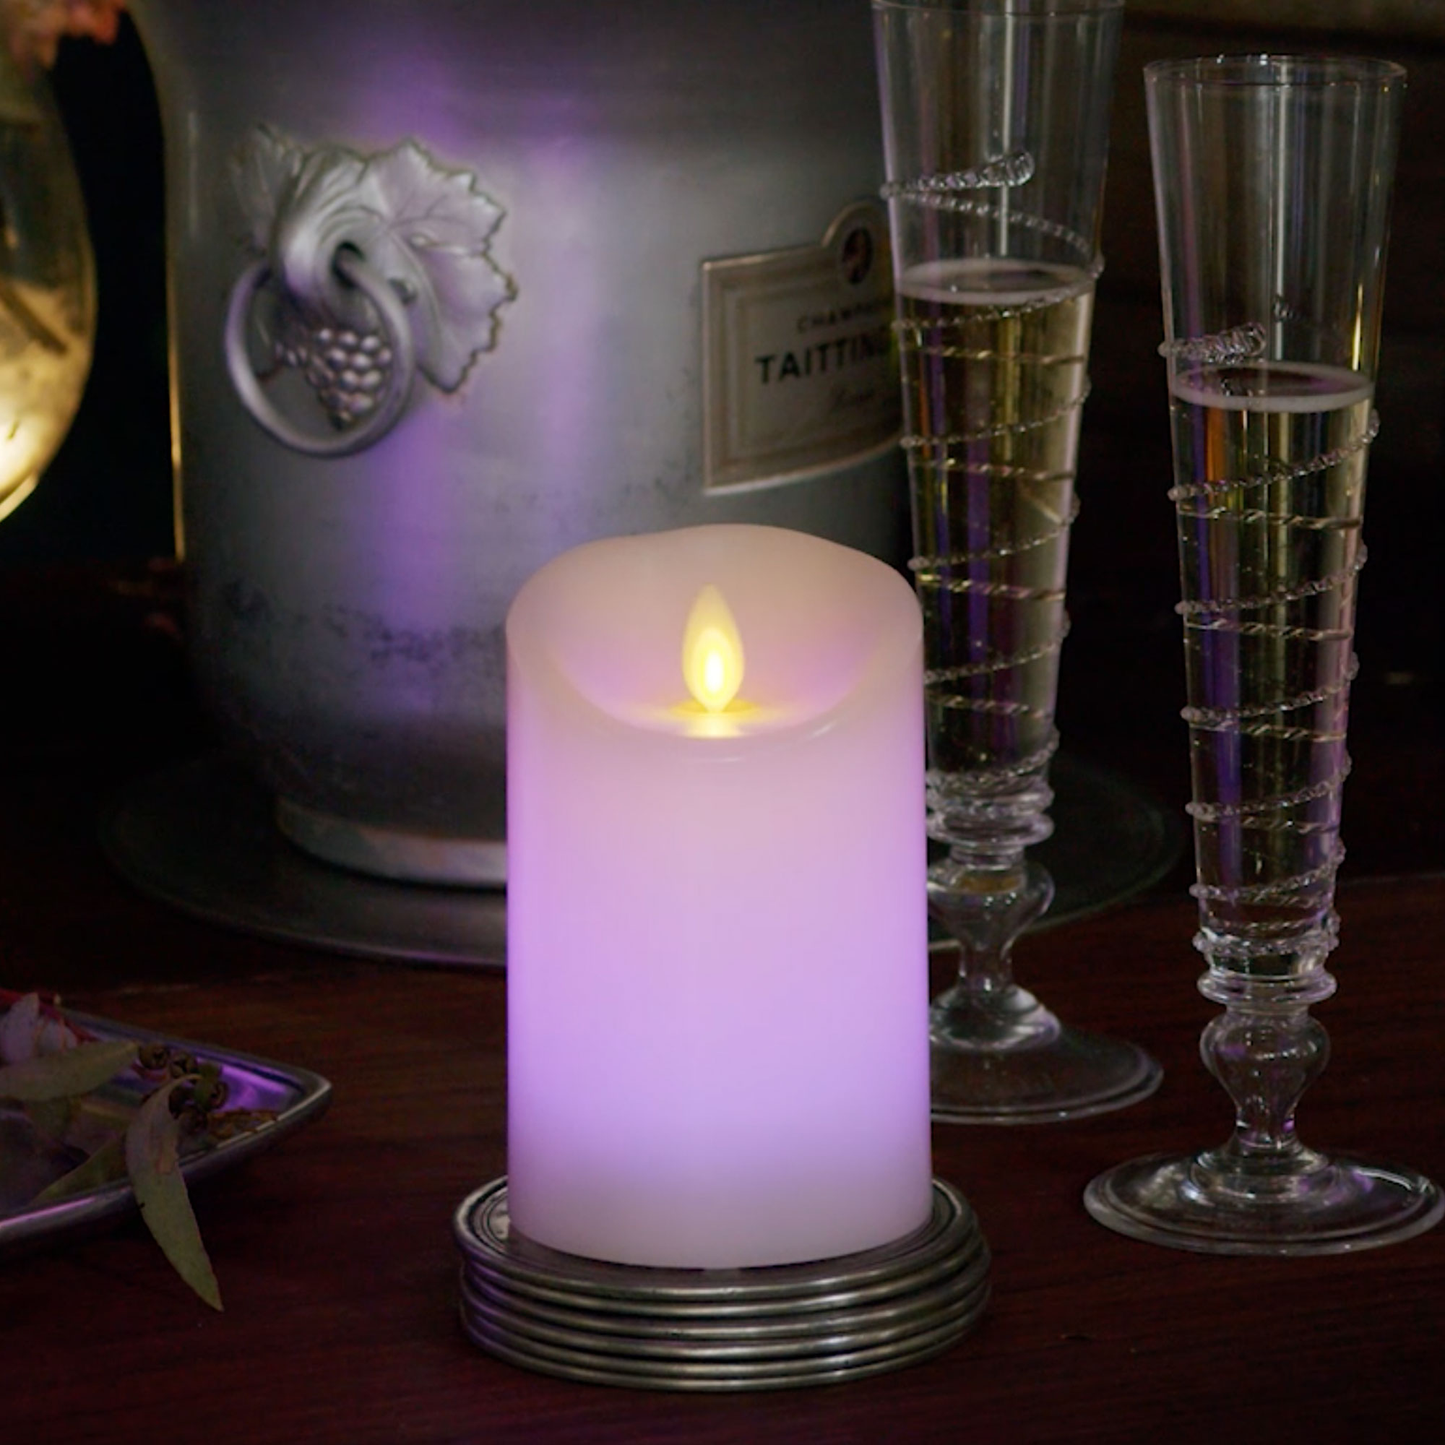 Luminara's color changing LED candles